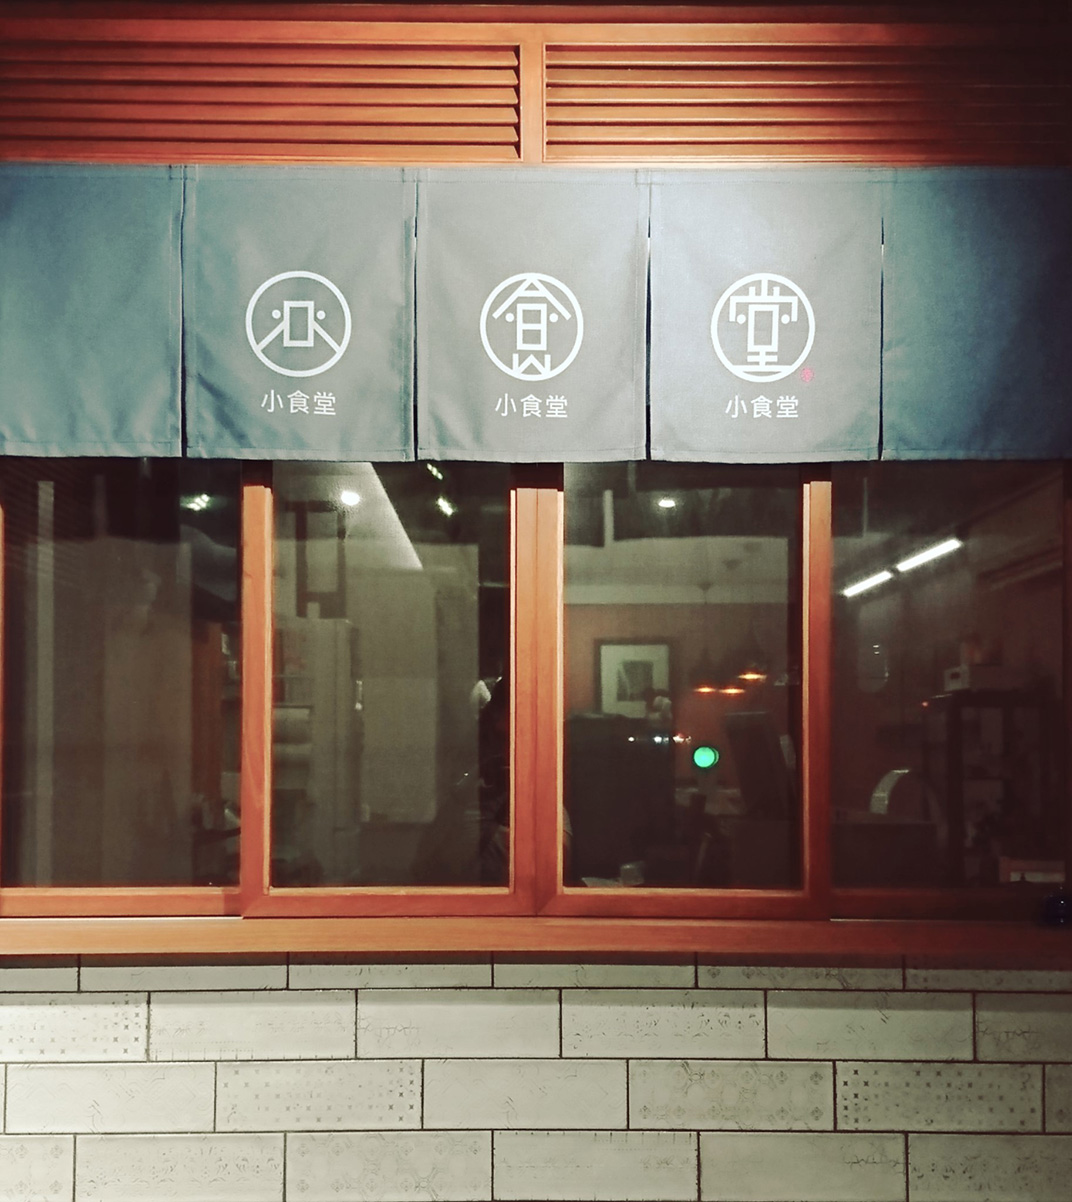 设计师开的小食堂餐厅 台湾 食堂 字体设计 logo设计 vi设计 空间设计